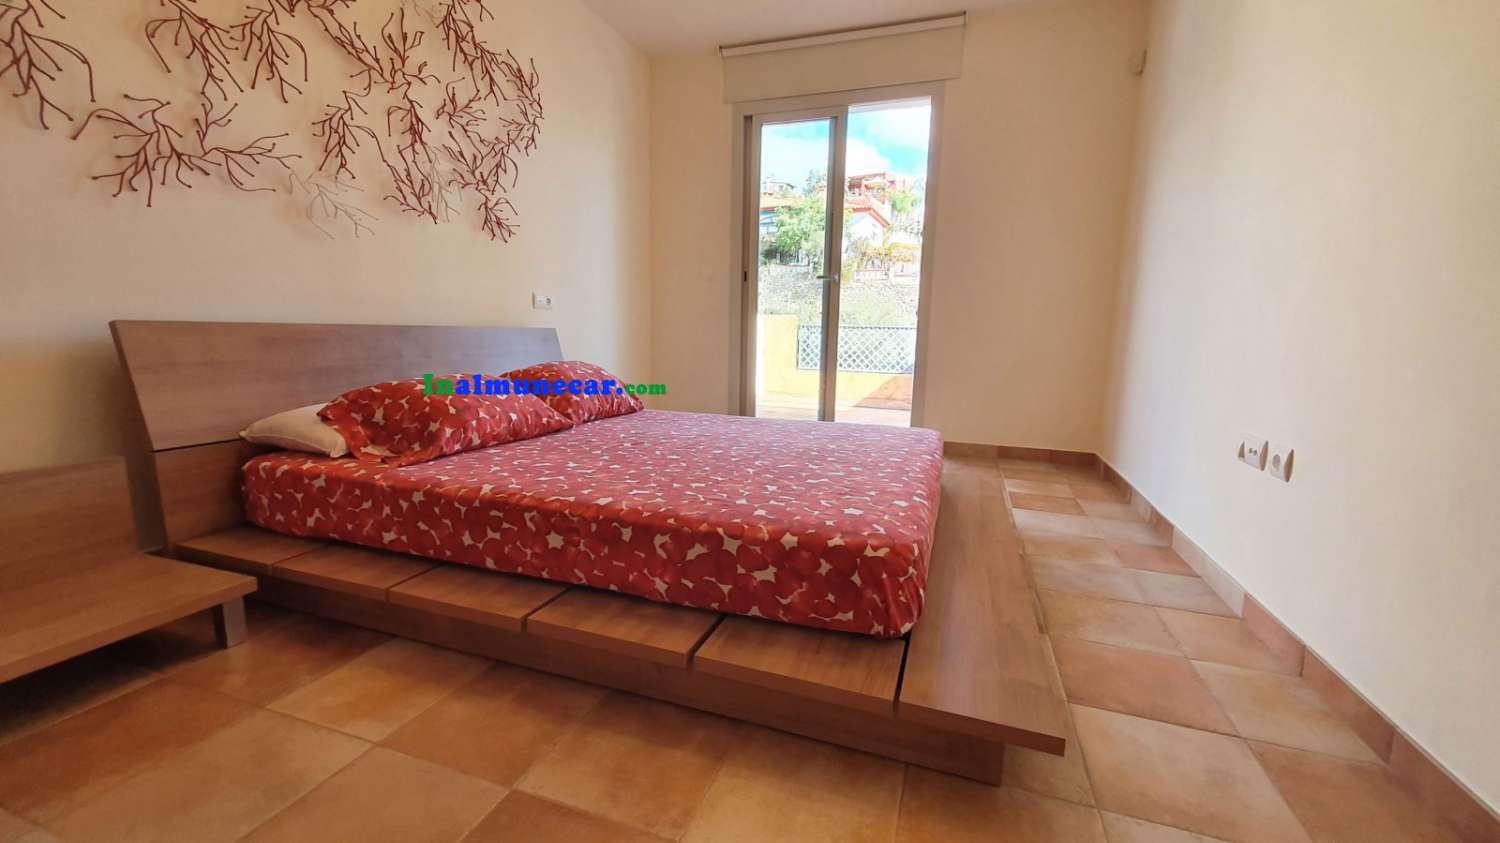 Precioso apartamento en venta en Almuñécar, con piscina comunitaria y frondosos jardines